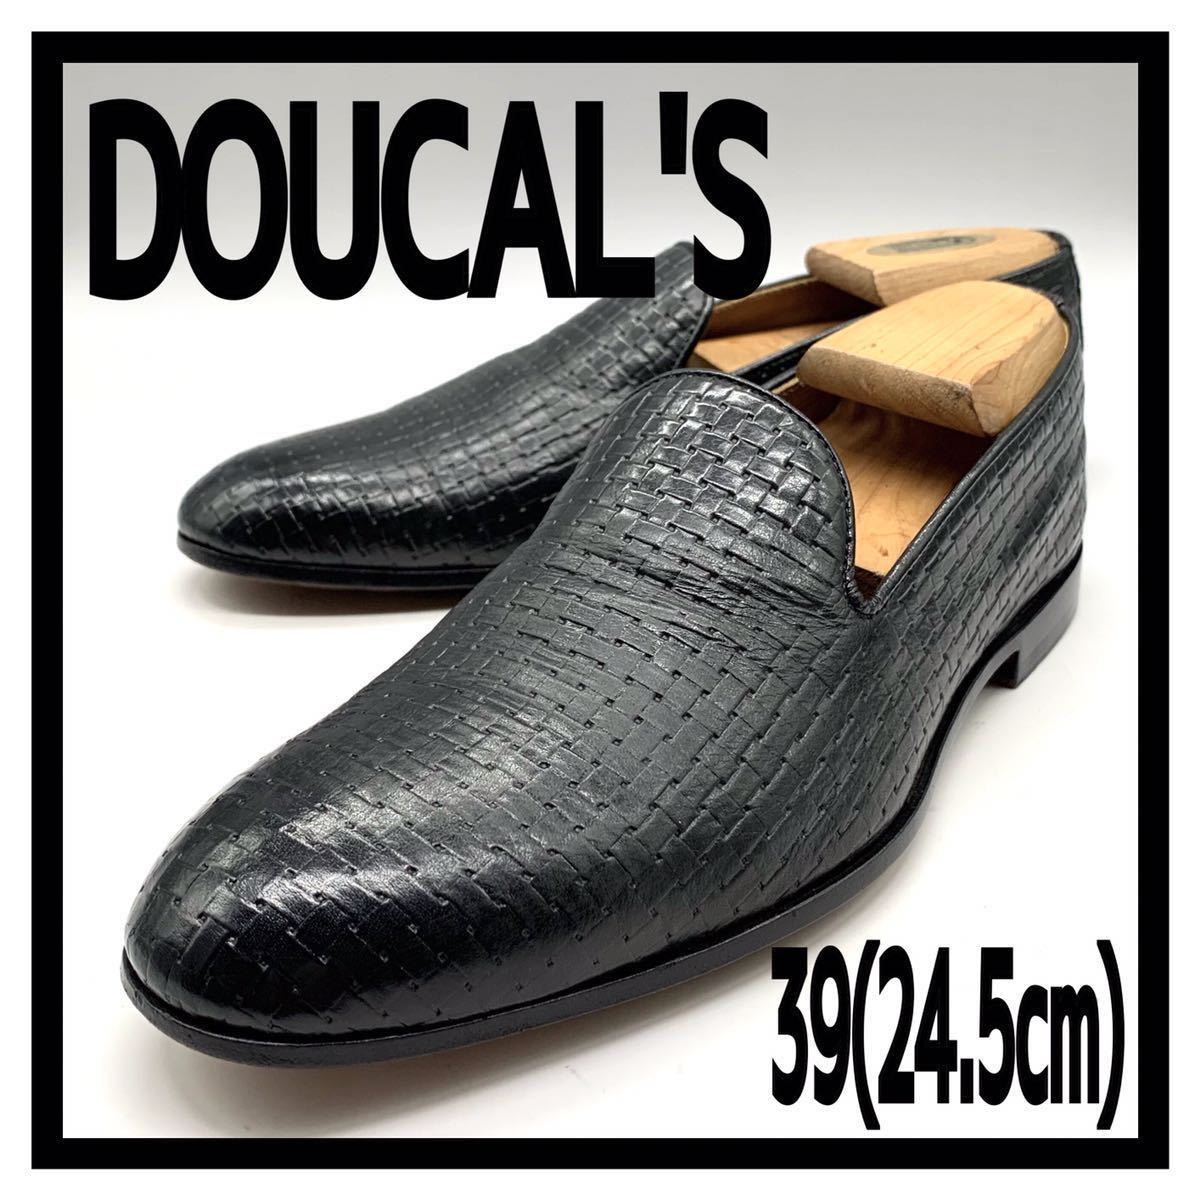 DOUCAL'S（デュカルス) ドレスシューズ ローファー スリッポン レザー ブラック 黒 39 24.5cm 革靴 シューズ ビジネス イタリア製 メンズ